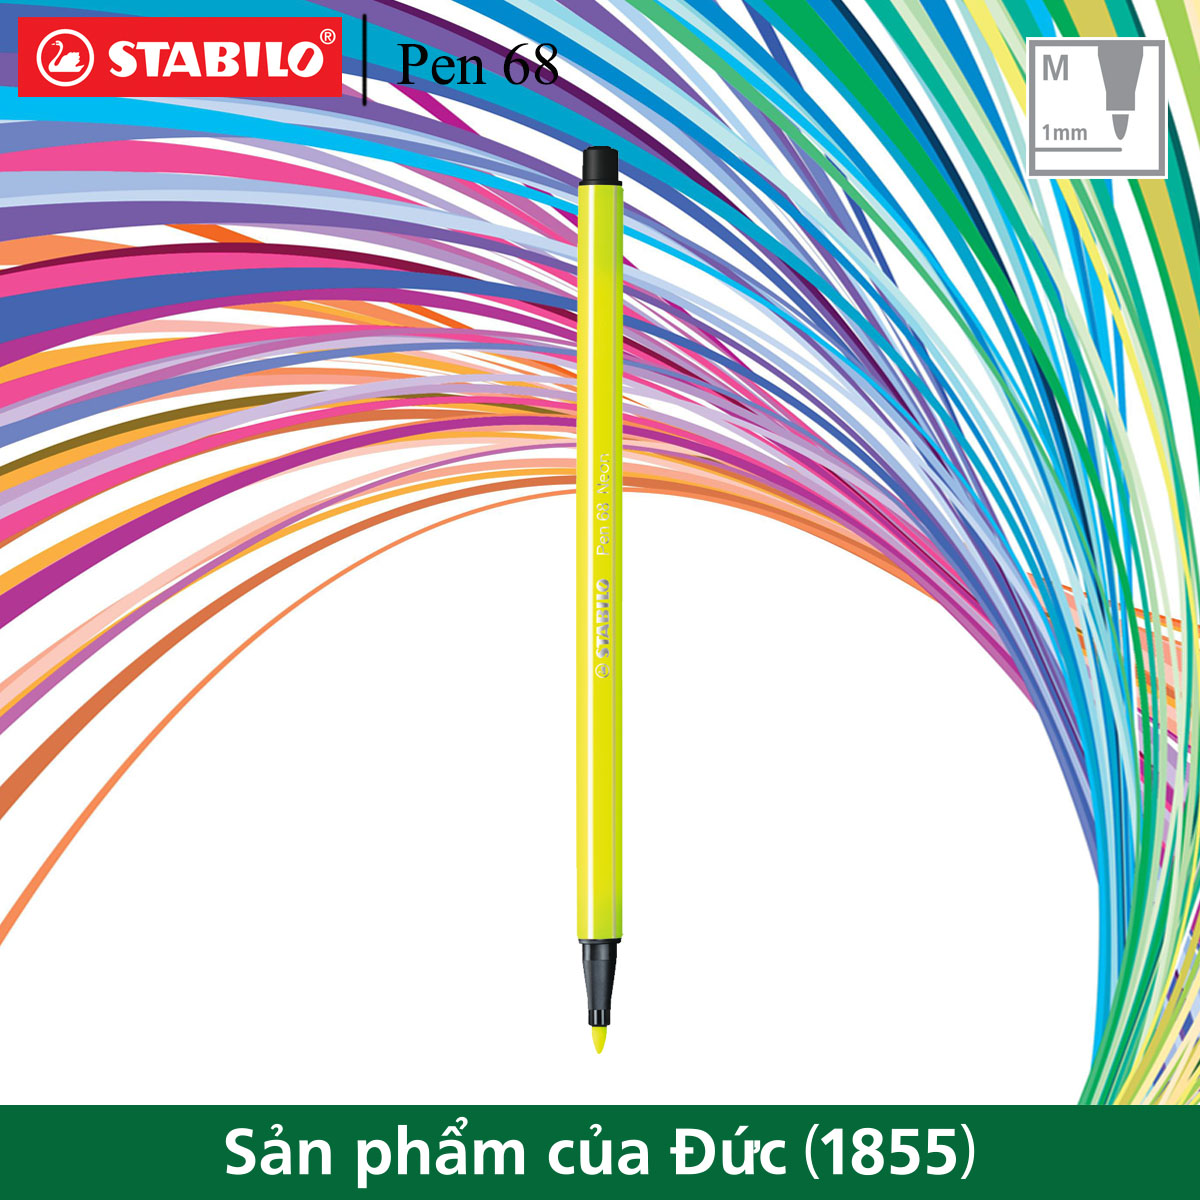 Bút lông màu STABILO Pen 68 1.0mm